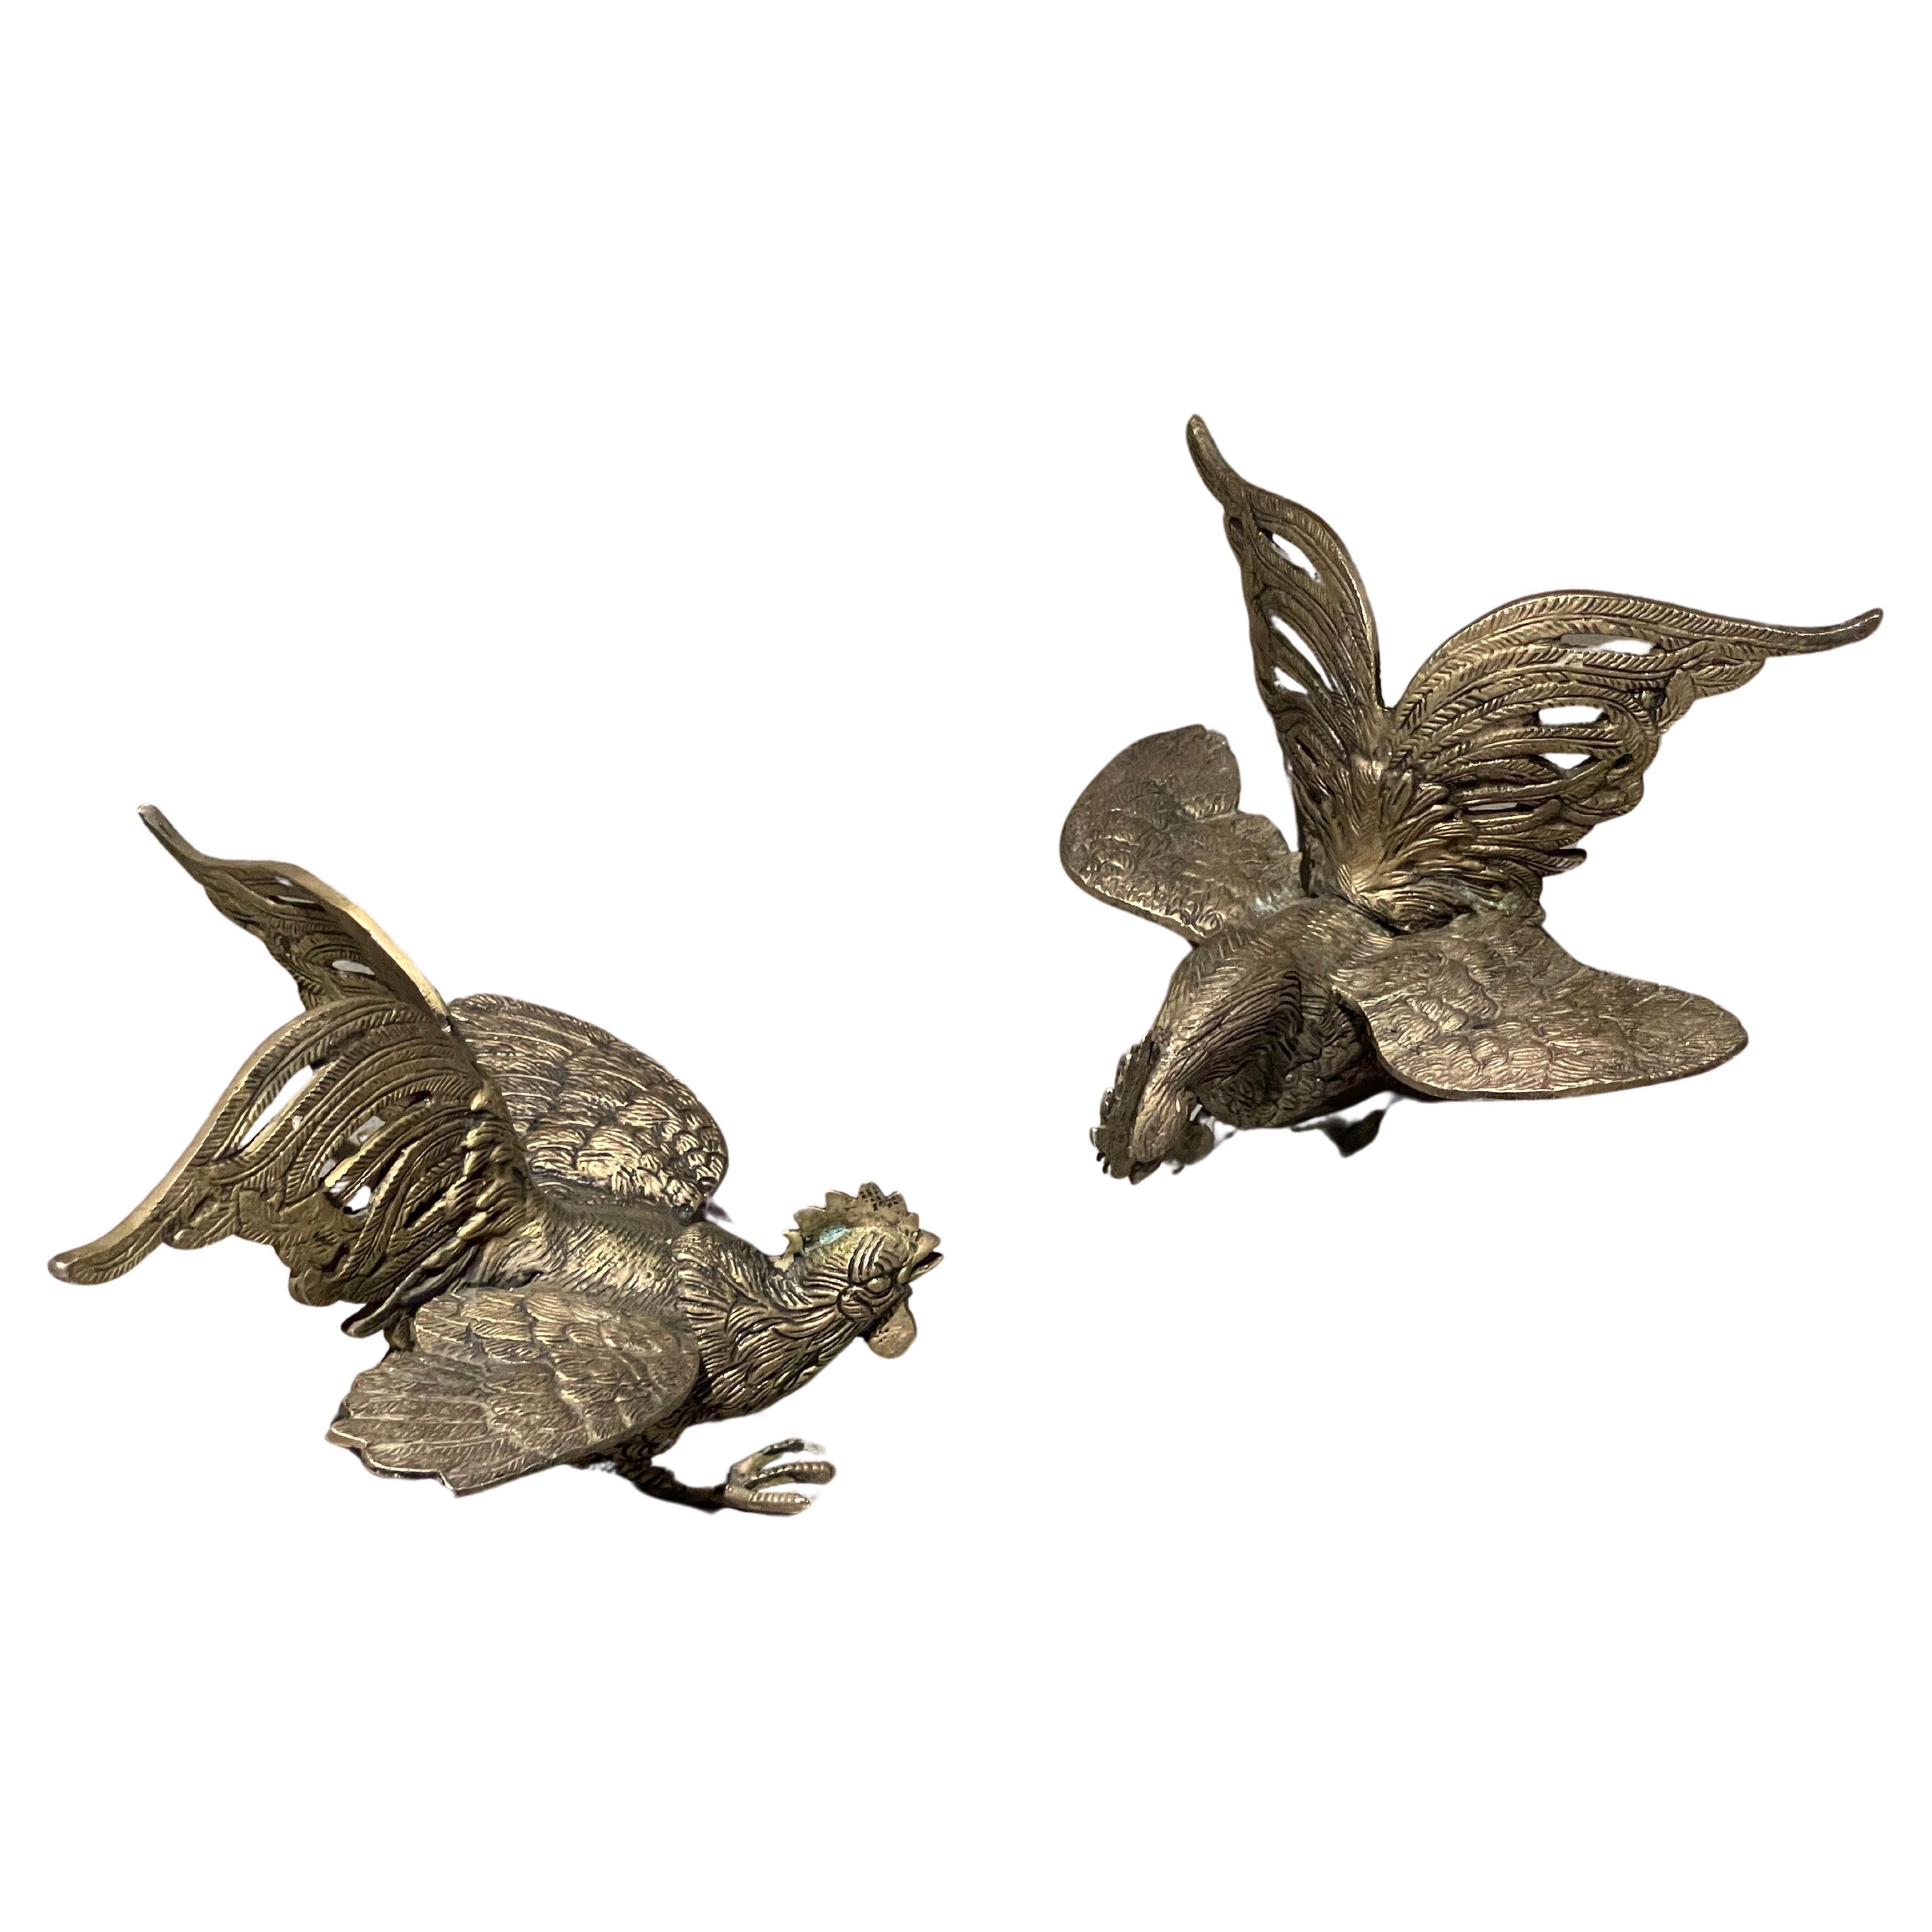 Une paire d'oiseaux artistiquement créés pour la décoration de table, coqs plaqués argent - idéal pour une table basse ou serre-livres. Ces figurines sont de style classique 